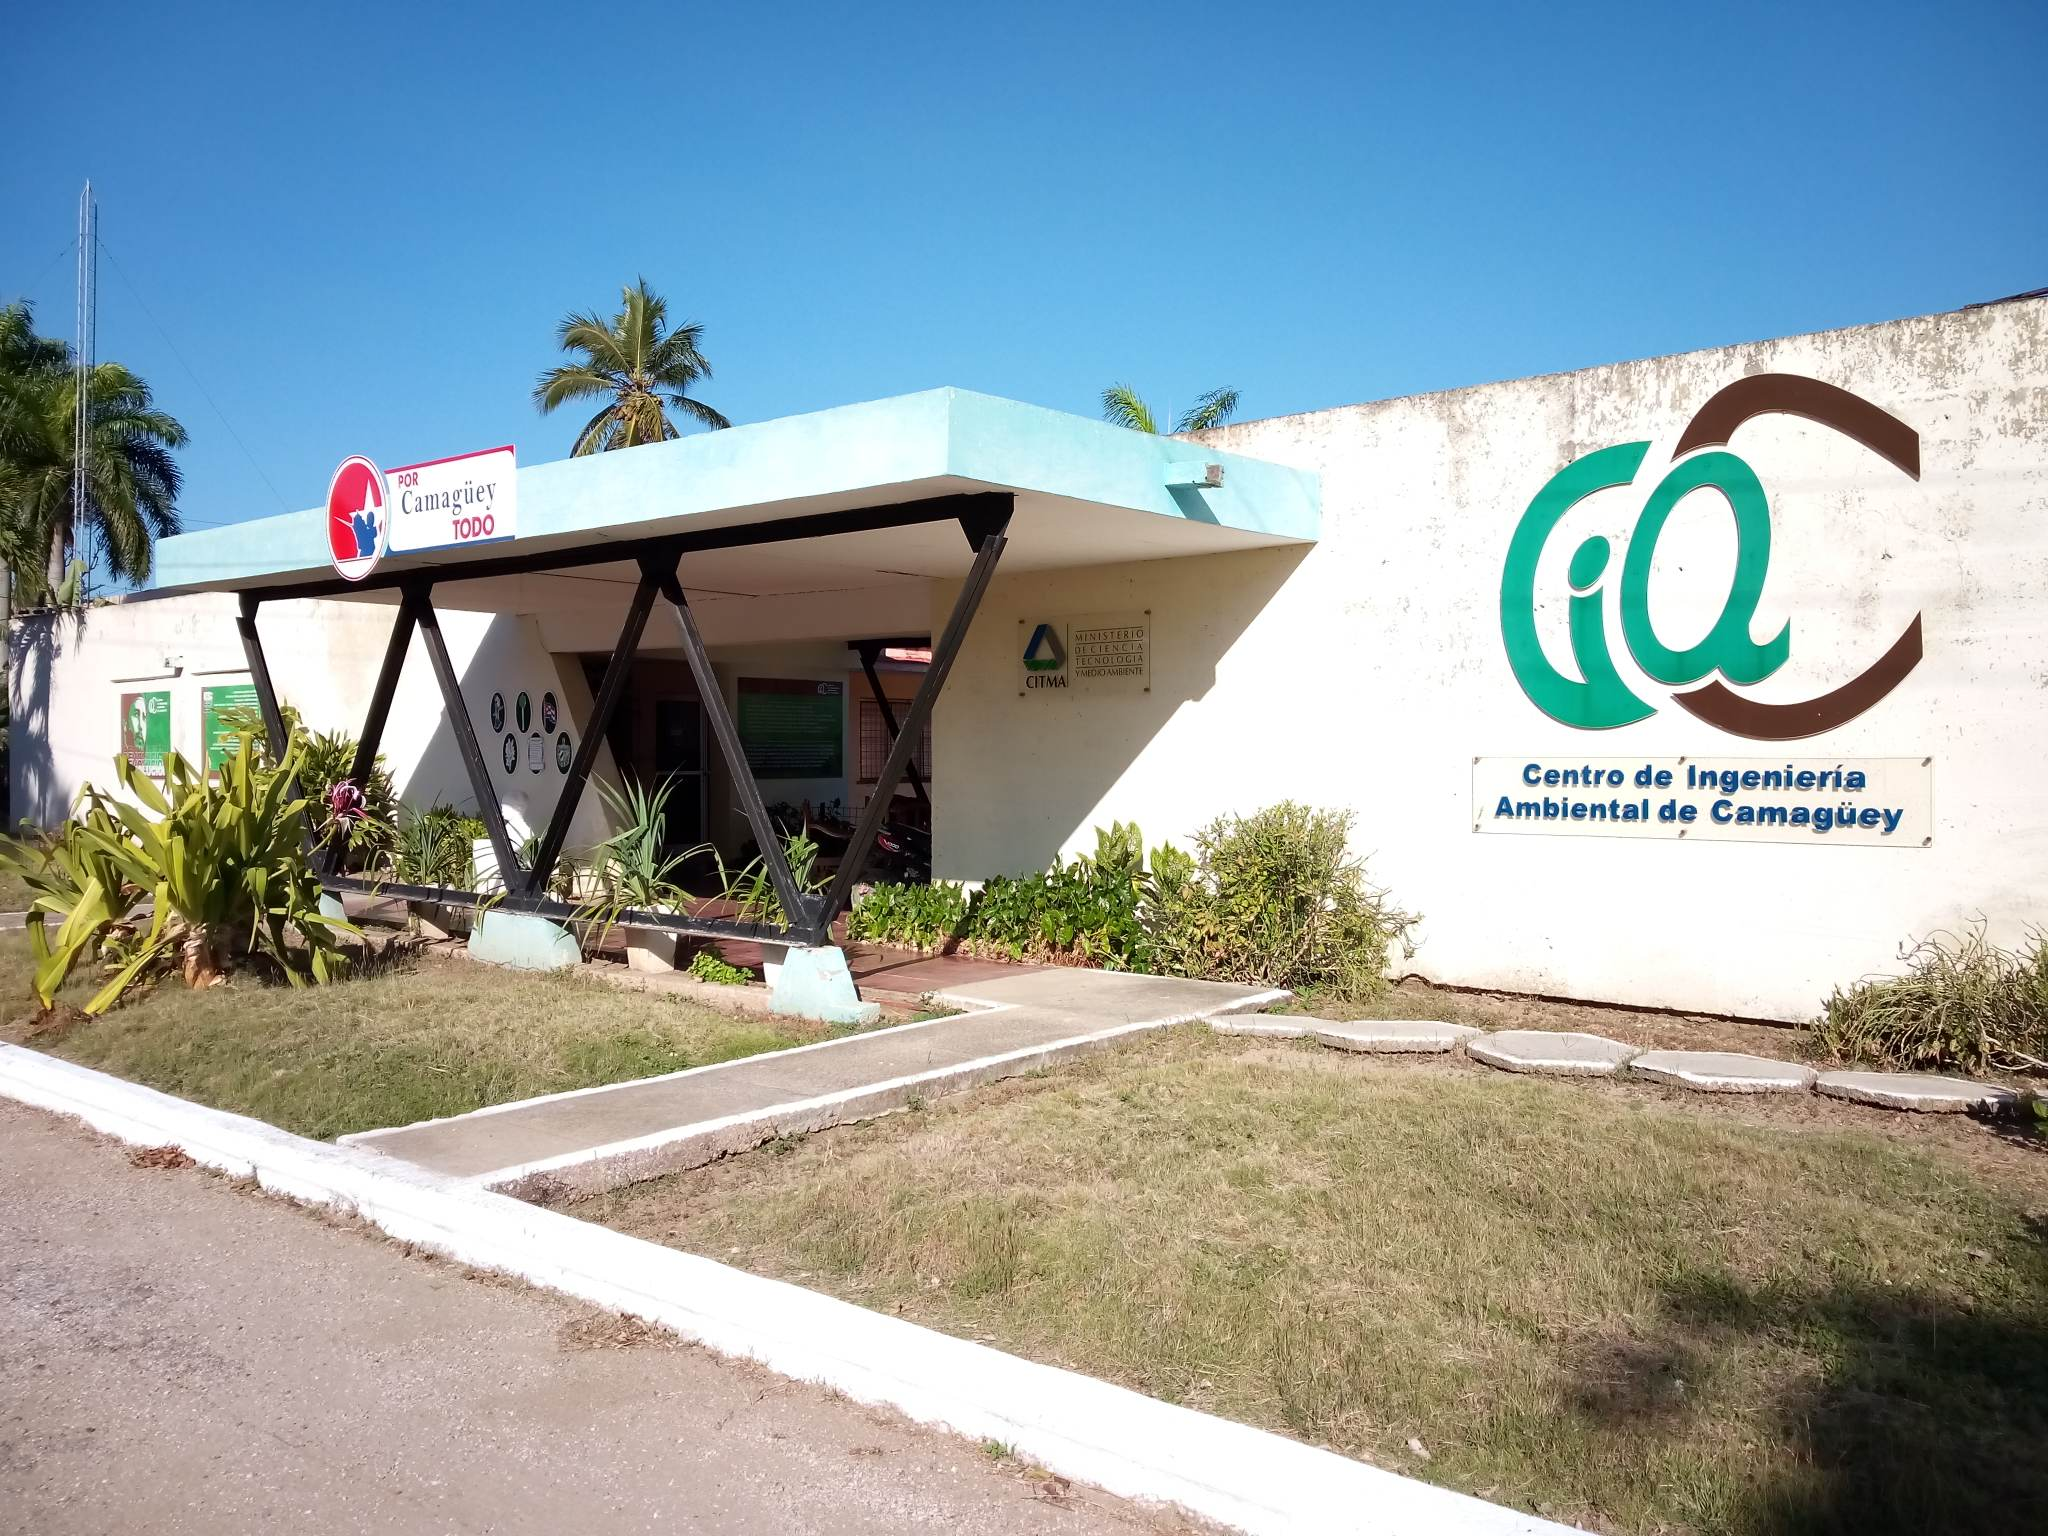 Le Centre d'ingénierie environnementale de Camagüey relève de nouveaux défis cette année